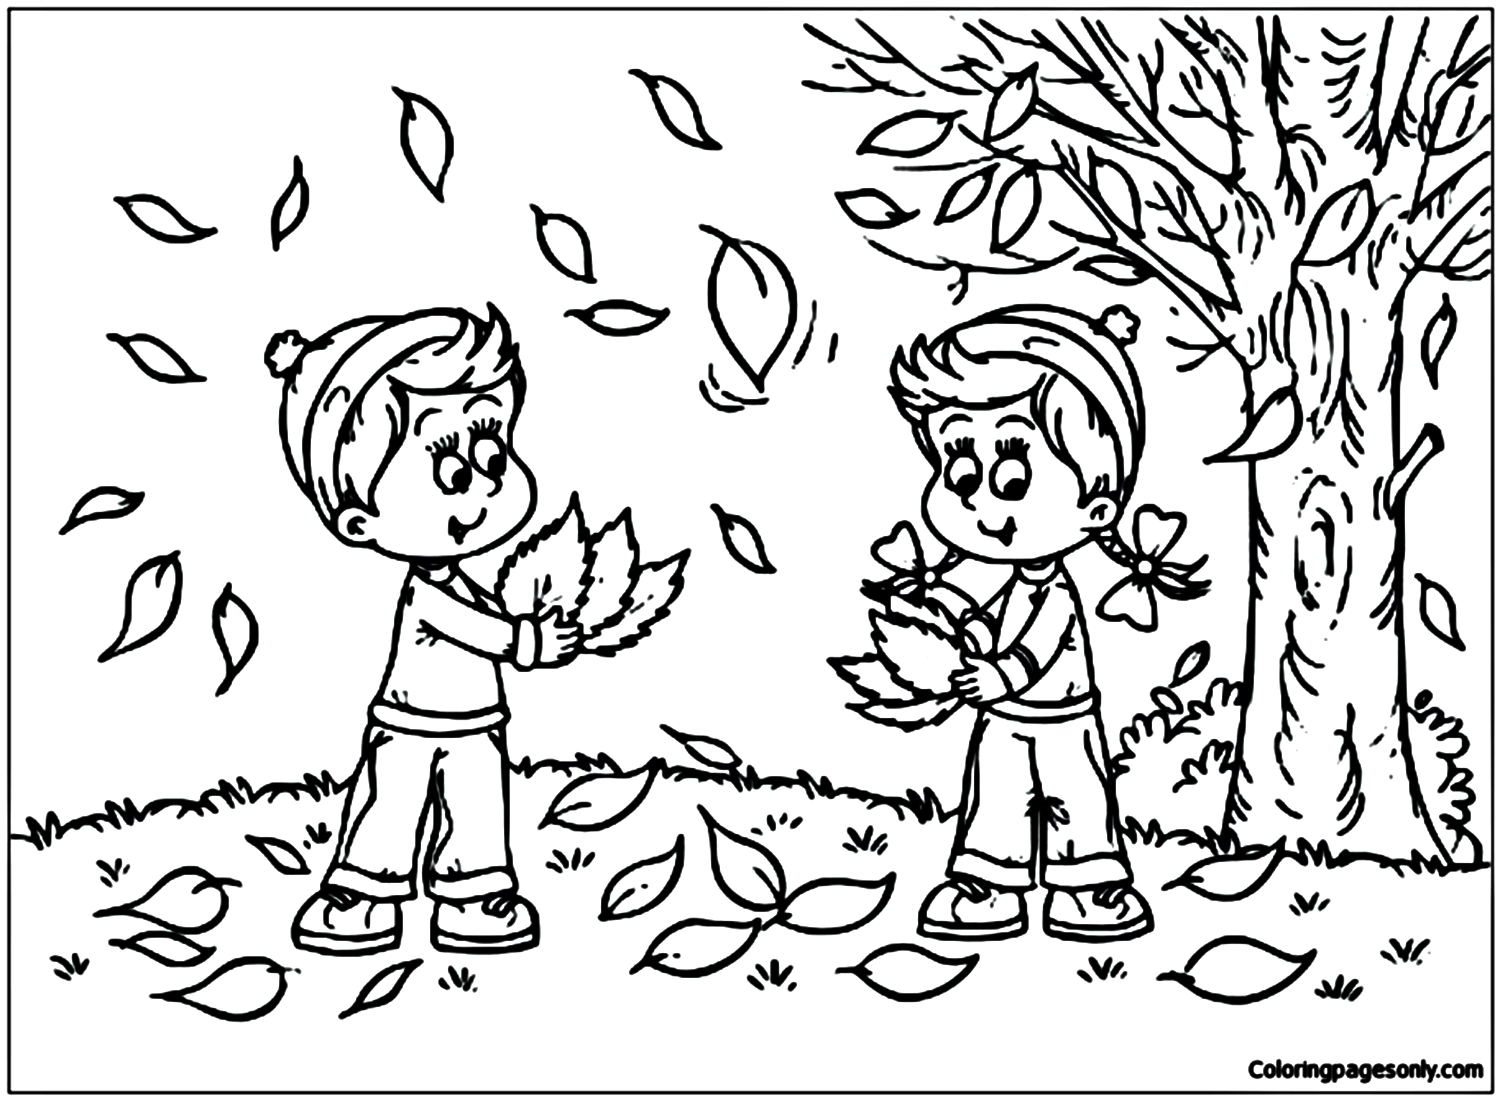 Niños jugando con hojas de otoño del otoño